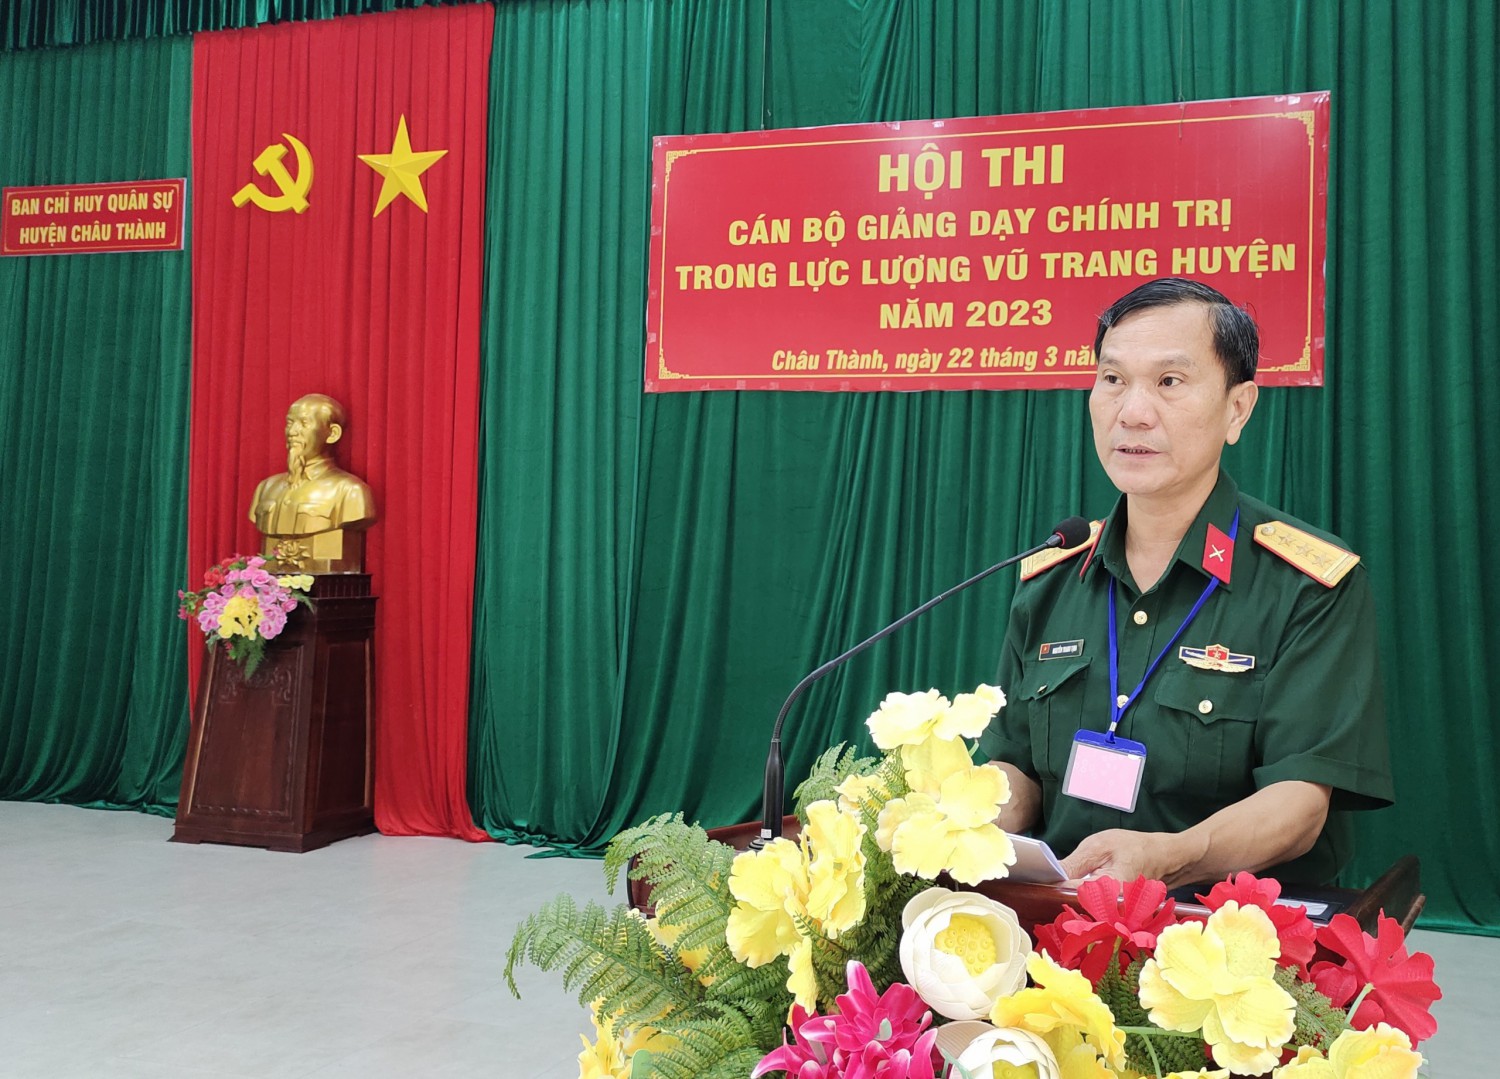 Châu Thành: Tổ chức hội thi cán bộ giảng dạy chính trị trong lực lượng vũ trang huyện năm 2023